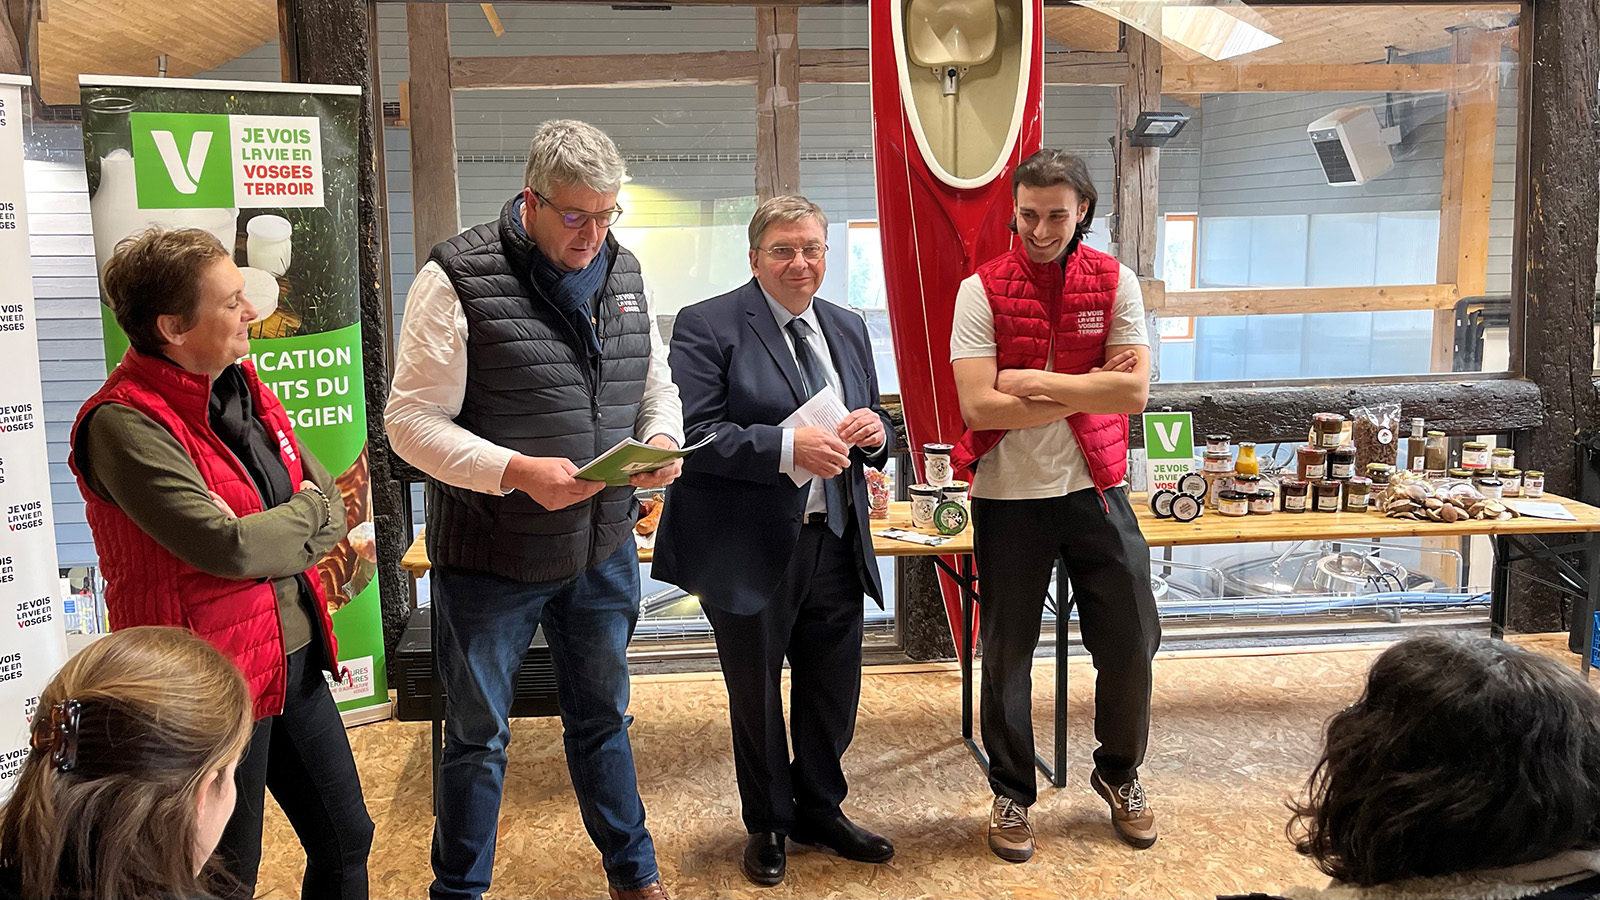 Le Salon Internationnal de l'Agriculture voit la Vie en Vosges